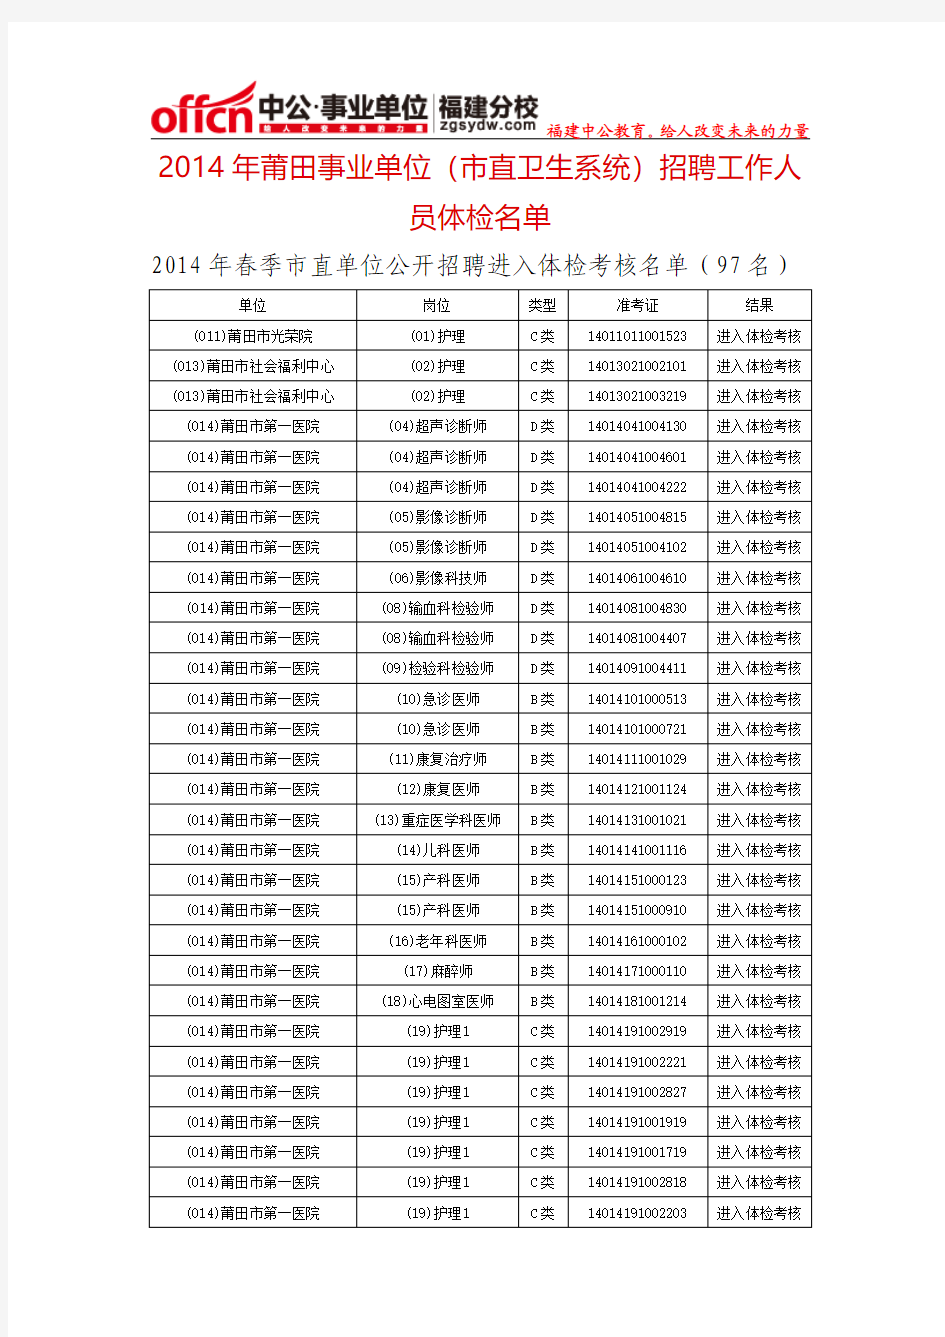 2014年莆田事业单位(市直卫生系统)招聘工作人员体检名单